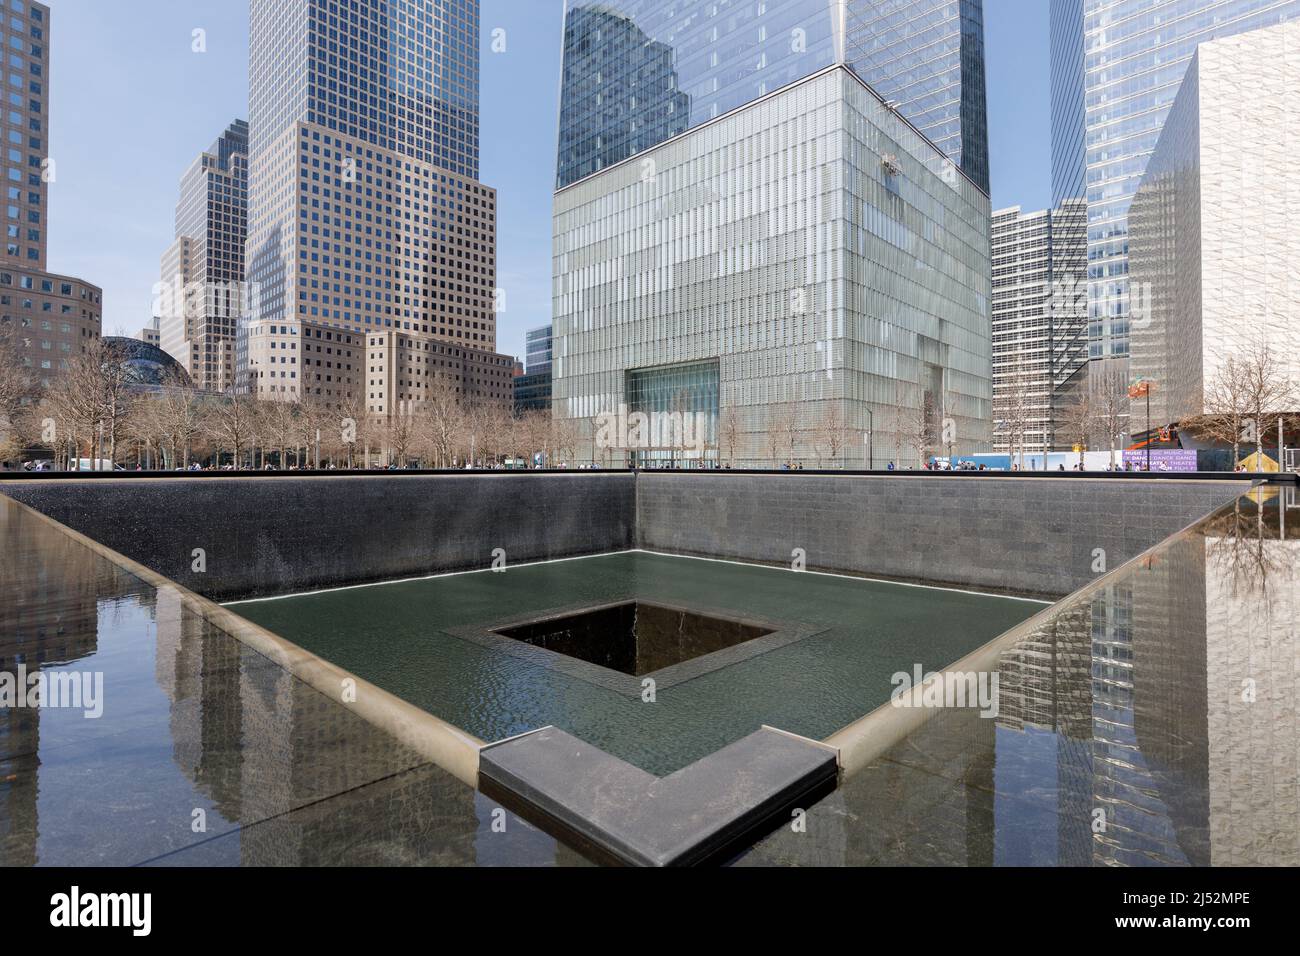 L'une des deux piscines réfléchissantes marquant l'emplacement des Twin Towers, National September 11 Memorial & Museum, New York, NY, Etats-Unis. Banque D'Images